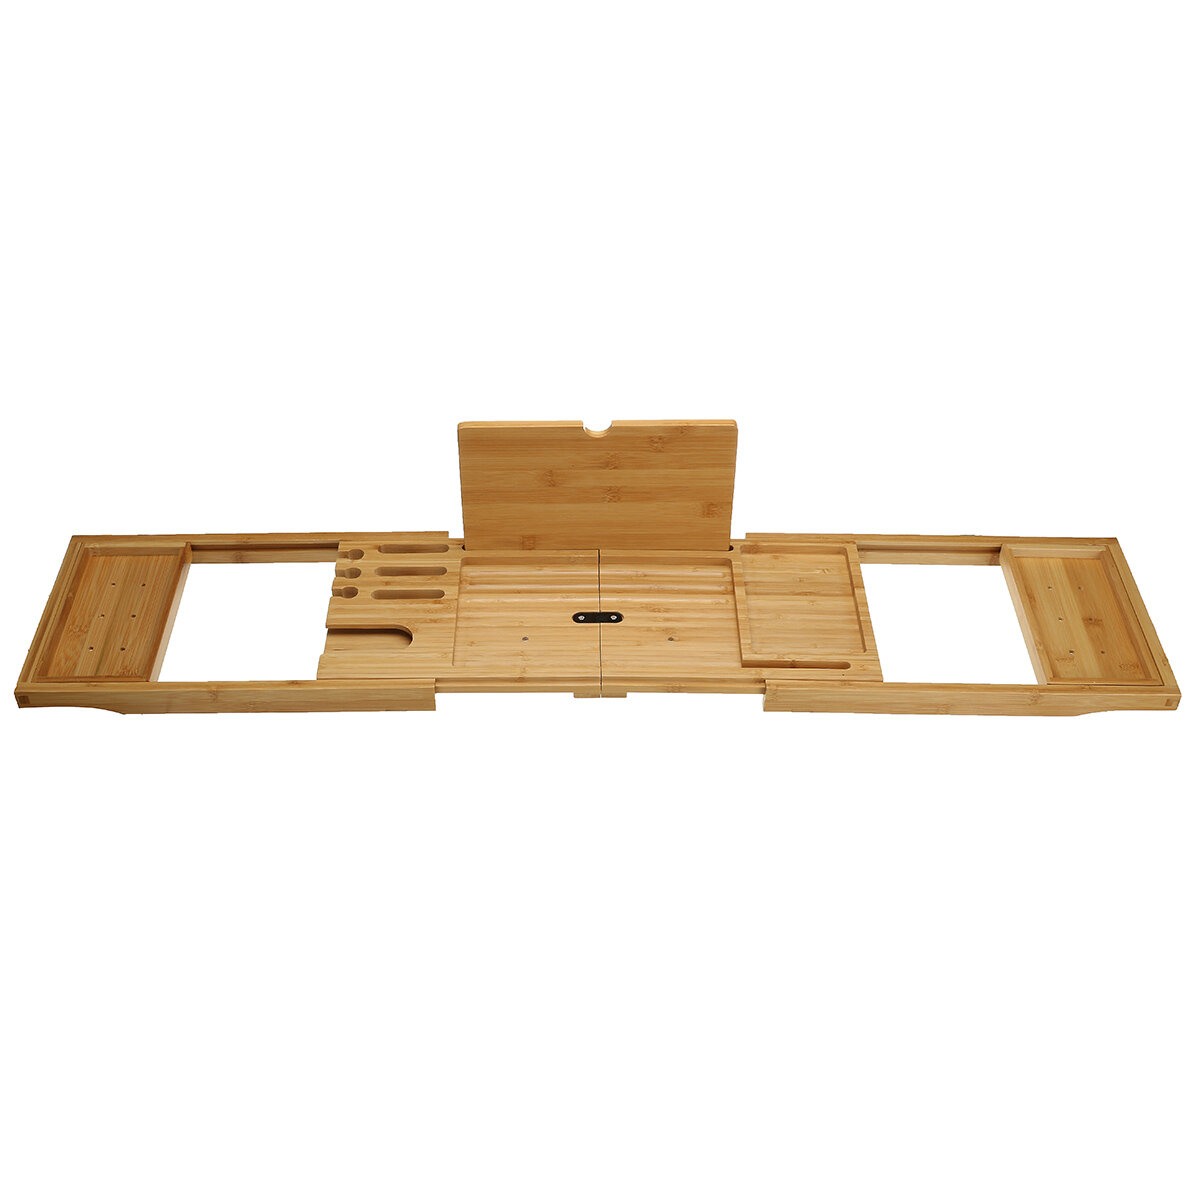 Uitschuifbare opbergplank voor bad. Verstelbare bamboe houten dienblad voor badkamer